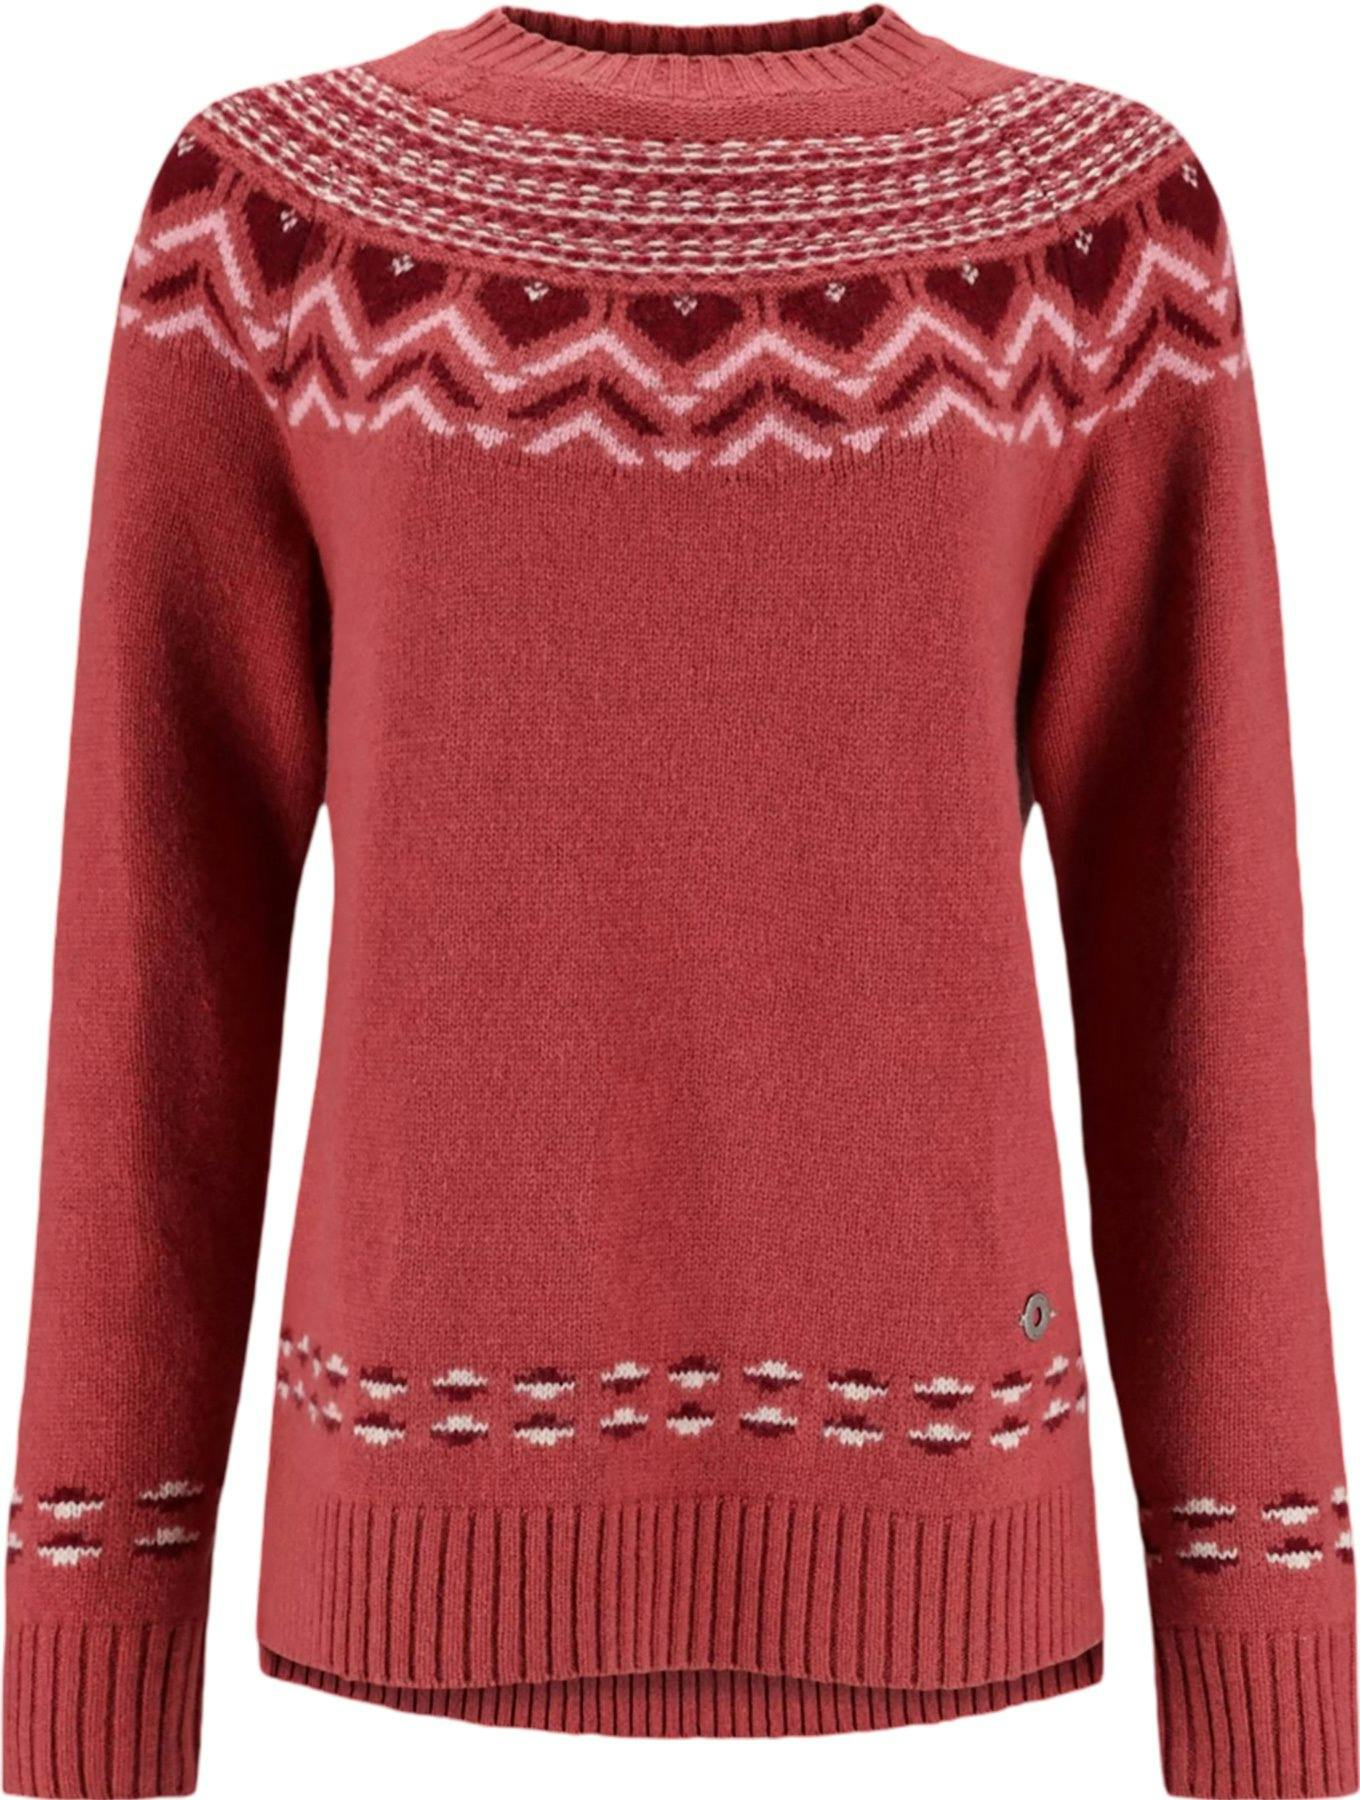 Image de produit pour Pull en tricot Sundve Knit - Femme